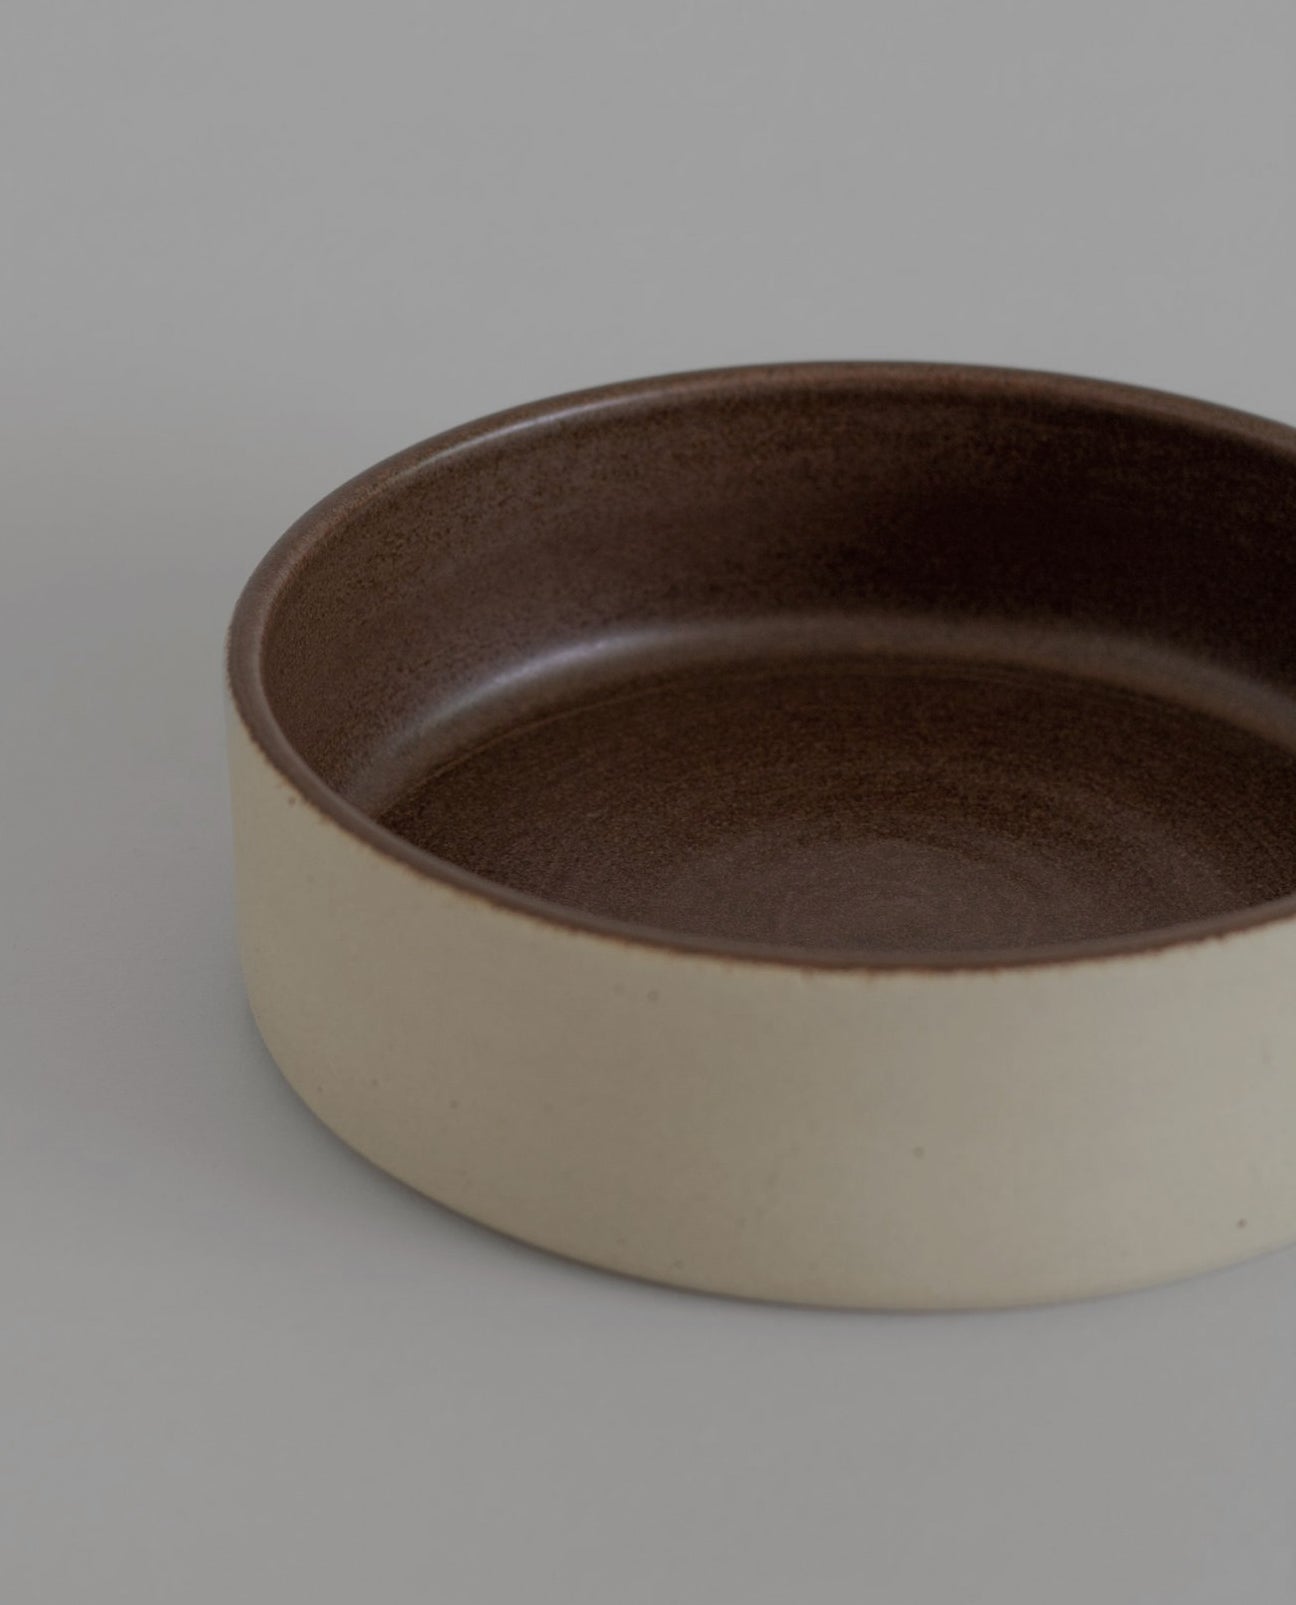 Orsi-Ocactuu Bowl in Natural / Brown